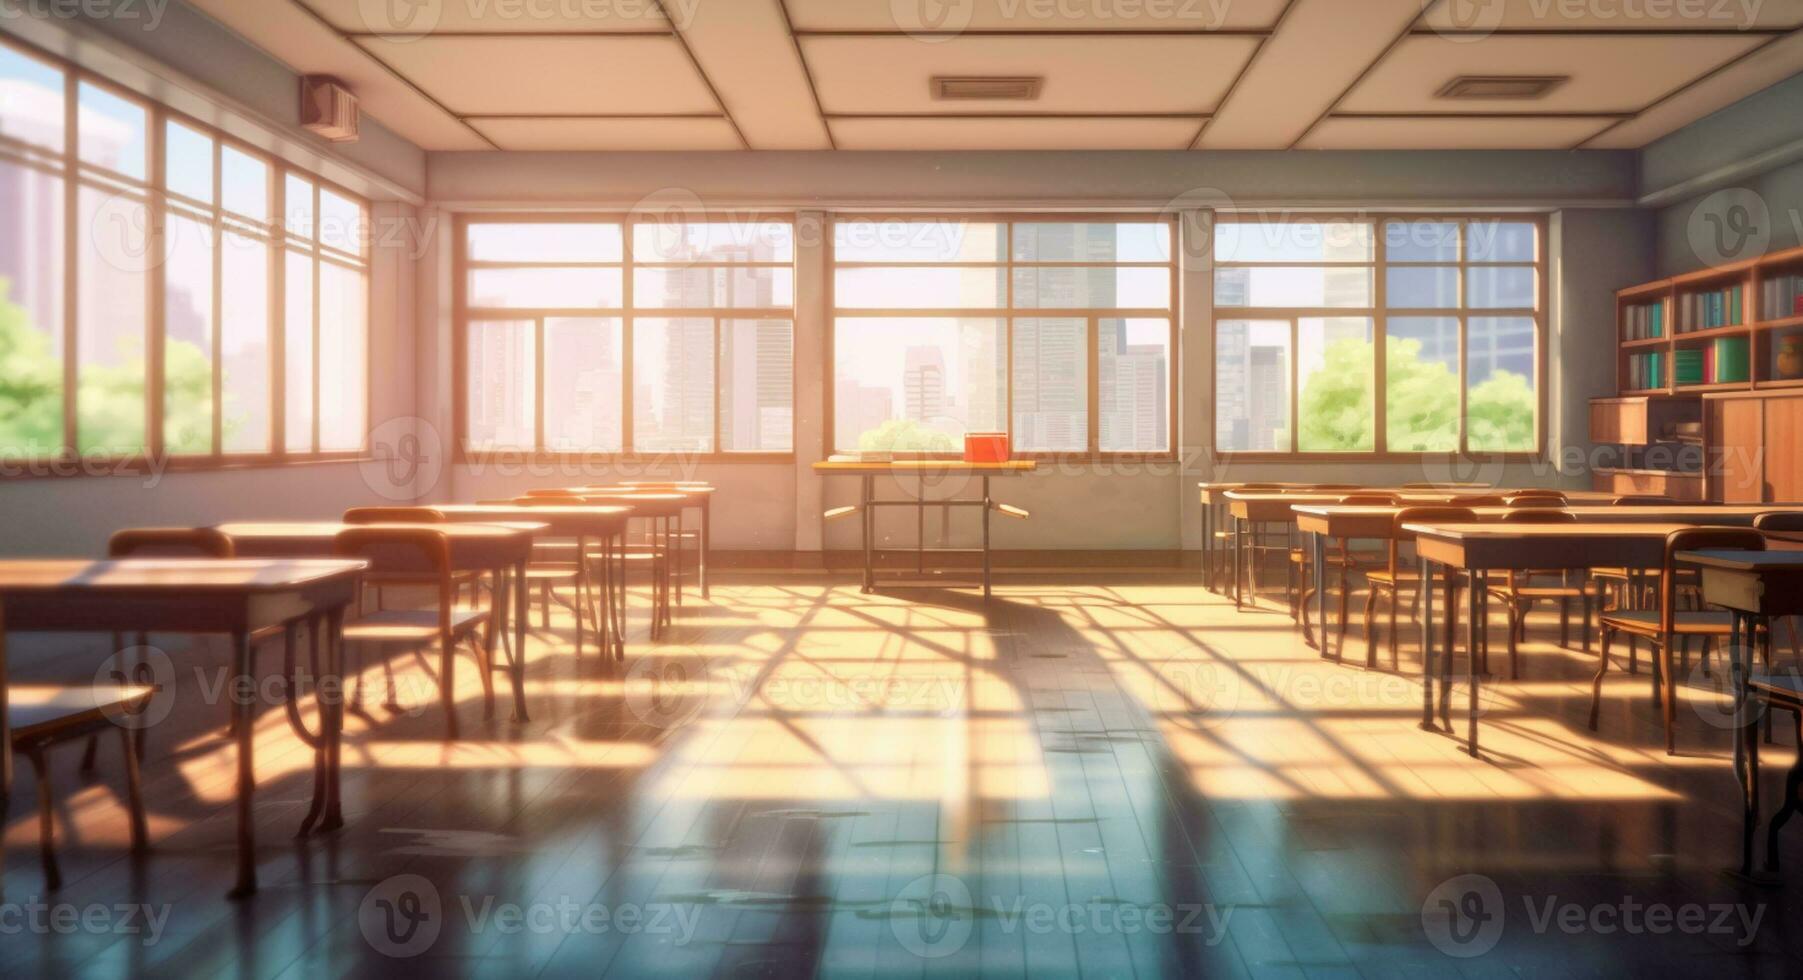 Anime Classroom  Anime classroom, Classroom interior, Classroom  architecture